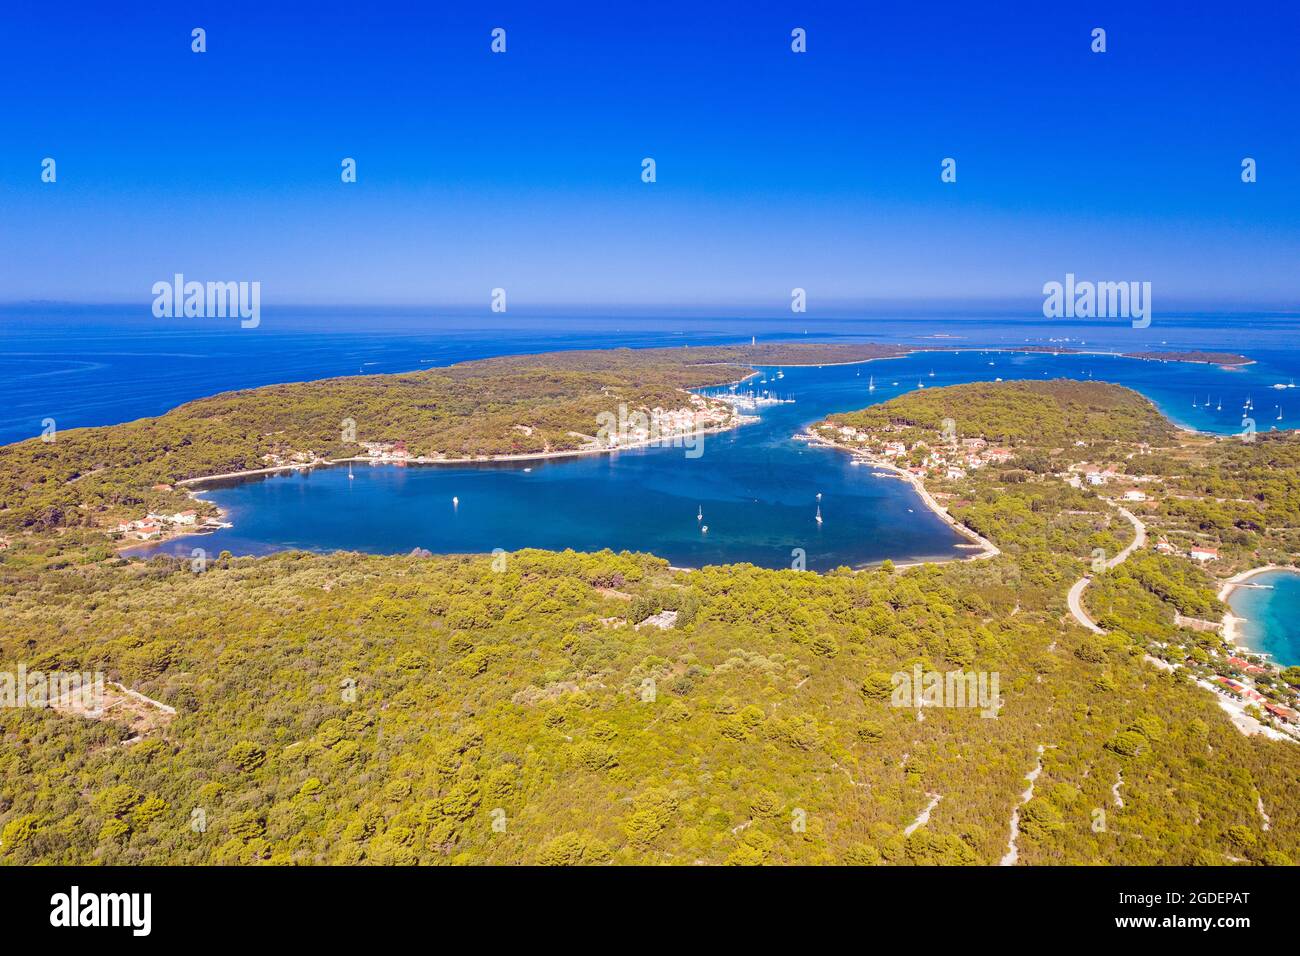 Vue aérienne de la baie de Veli Rat sur l'île de Dugi Otok en Croatie Banque D'Images